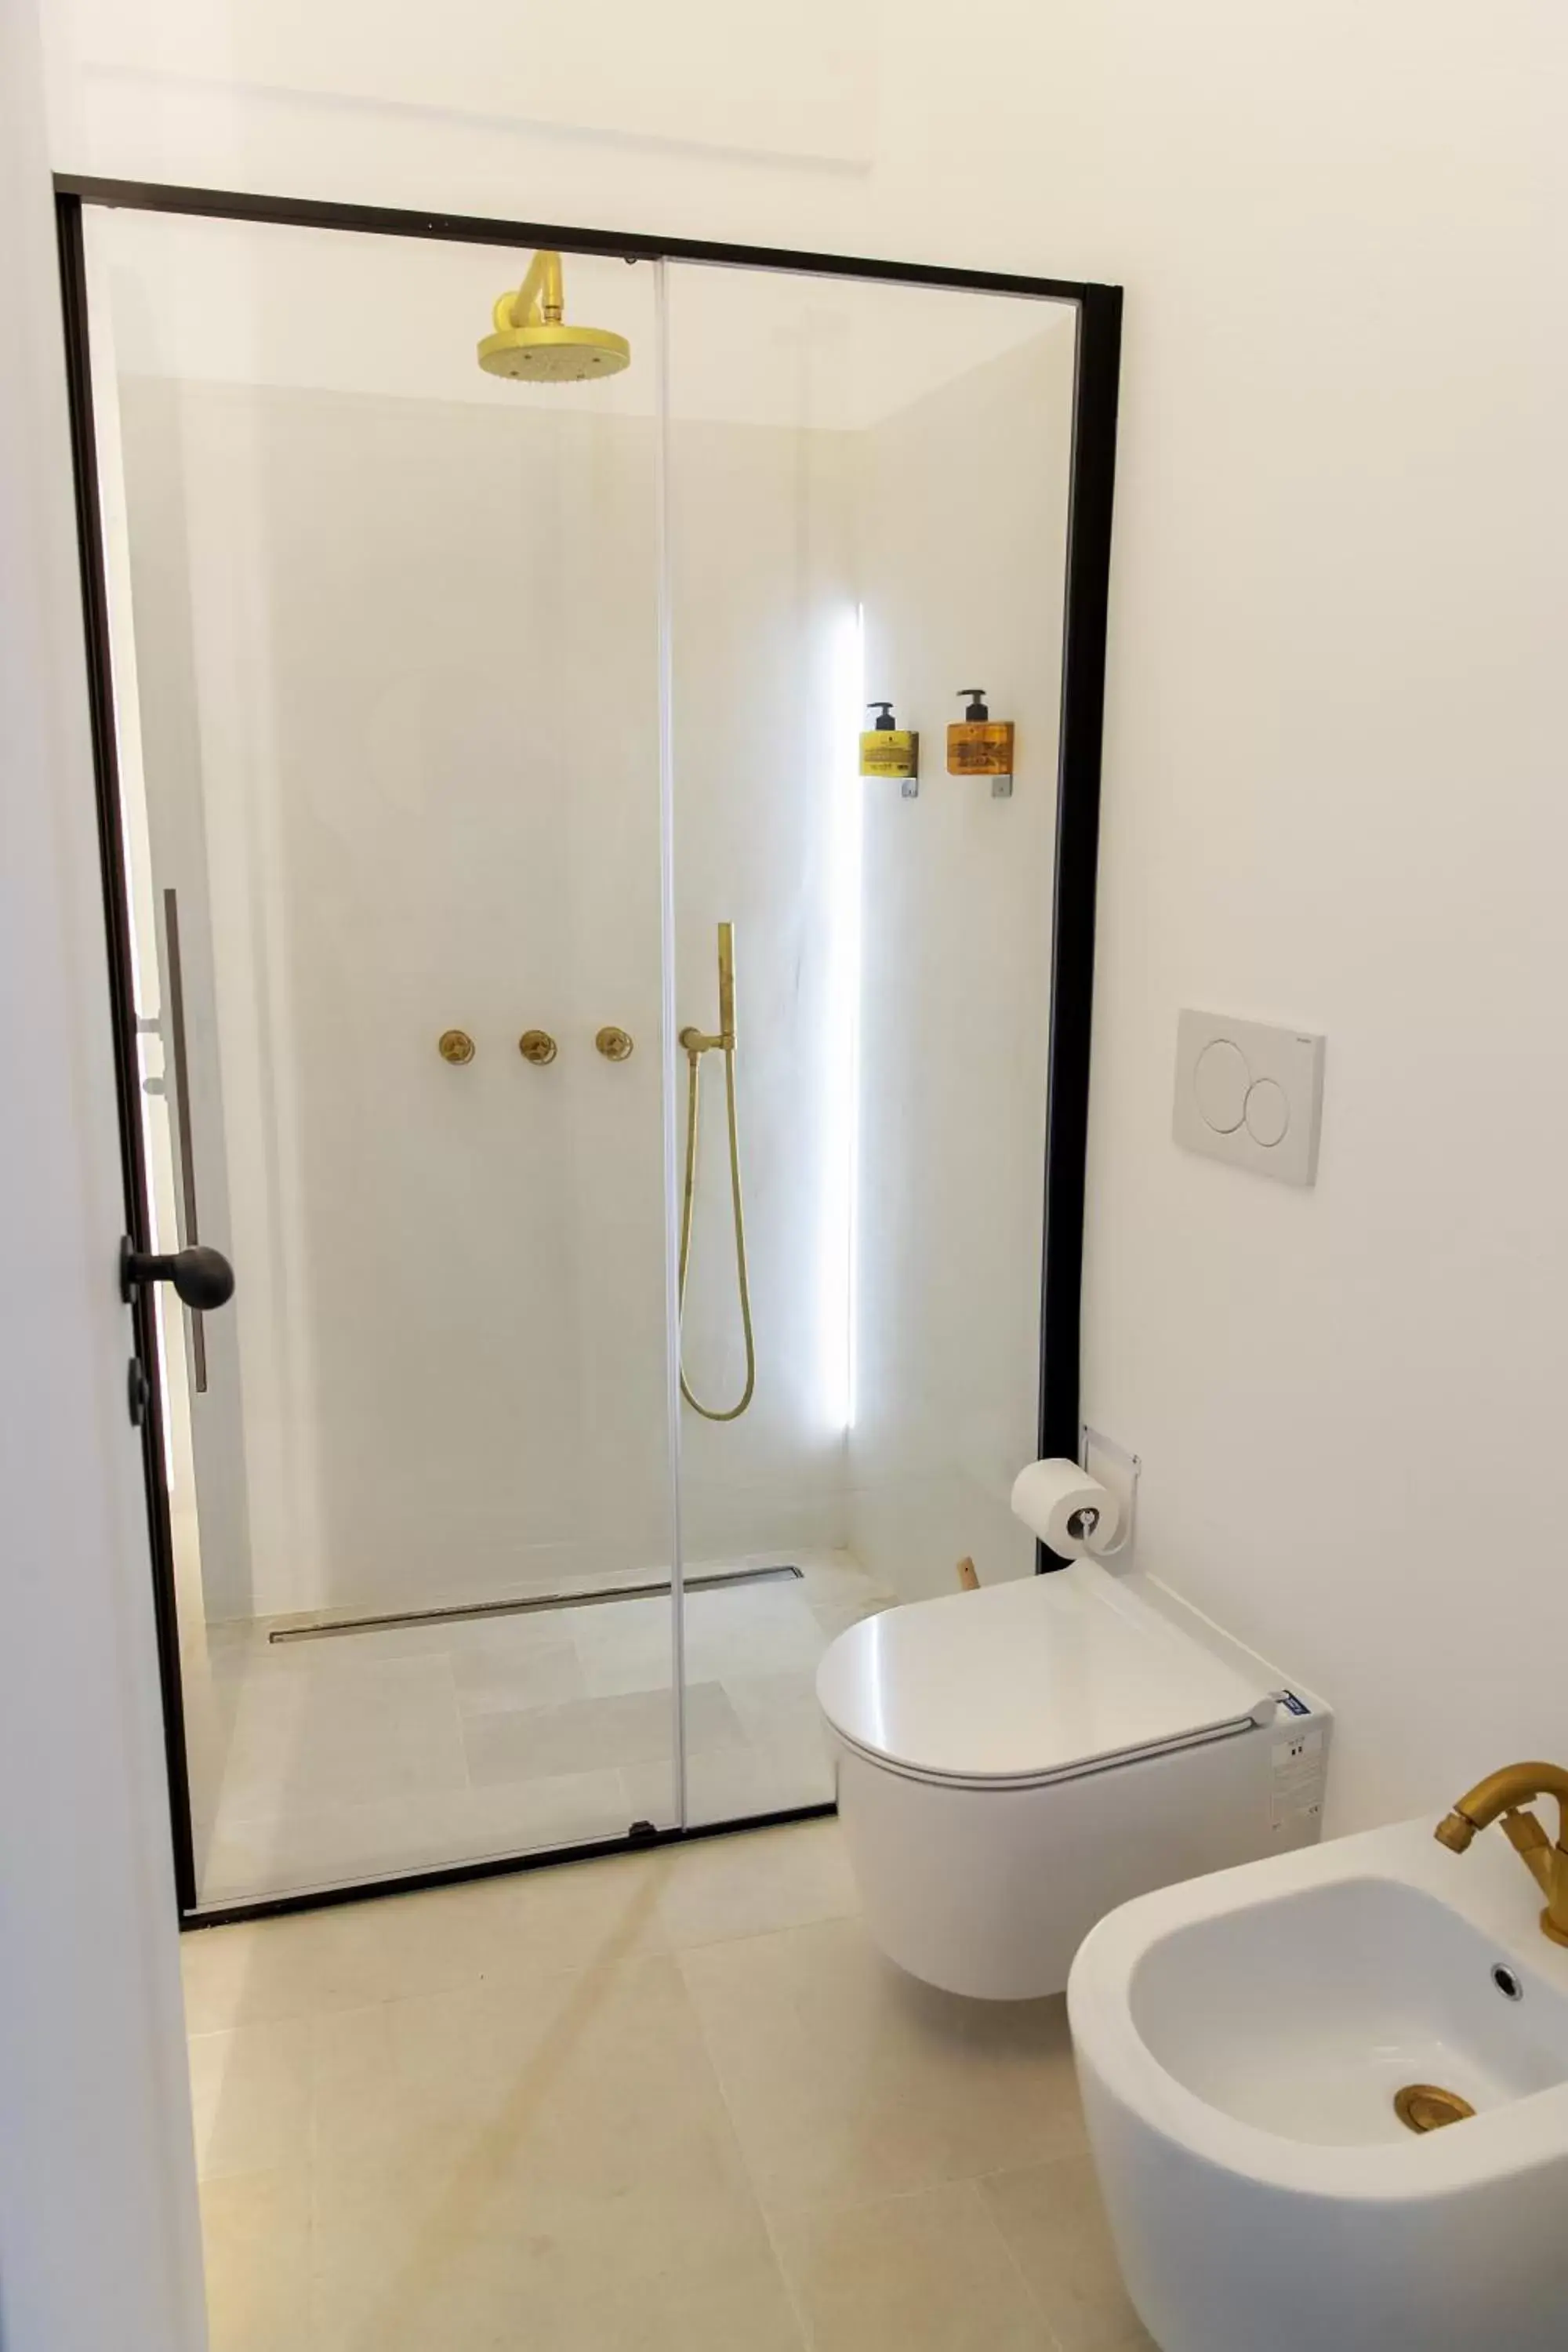 Toilet, Bathroom in Corte Manfredi